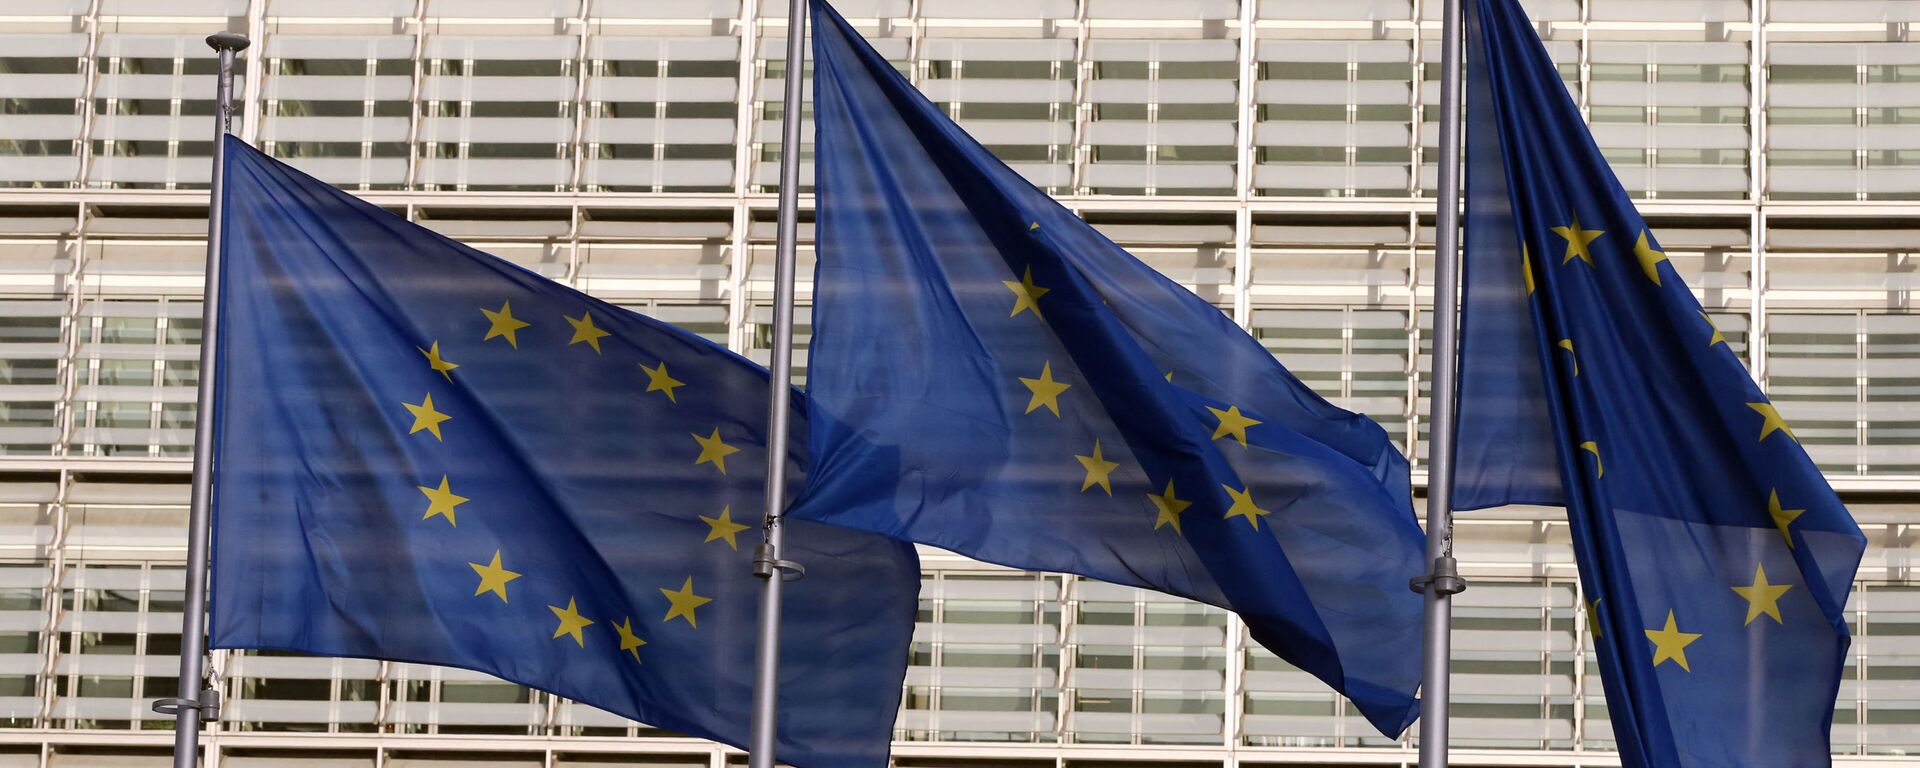 Флаги Европейского союза у штаб-квартиры Европейской комиссии в Брюсселе - Sputnik Lietuva, 1920, 11.05.2021